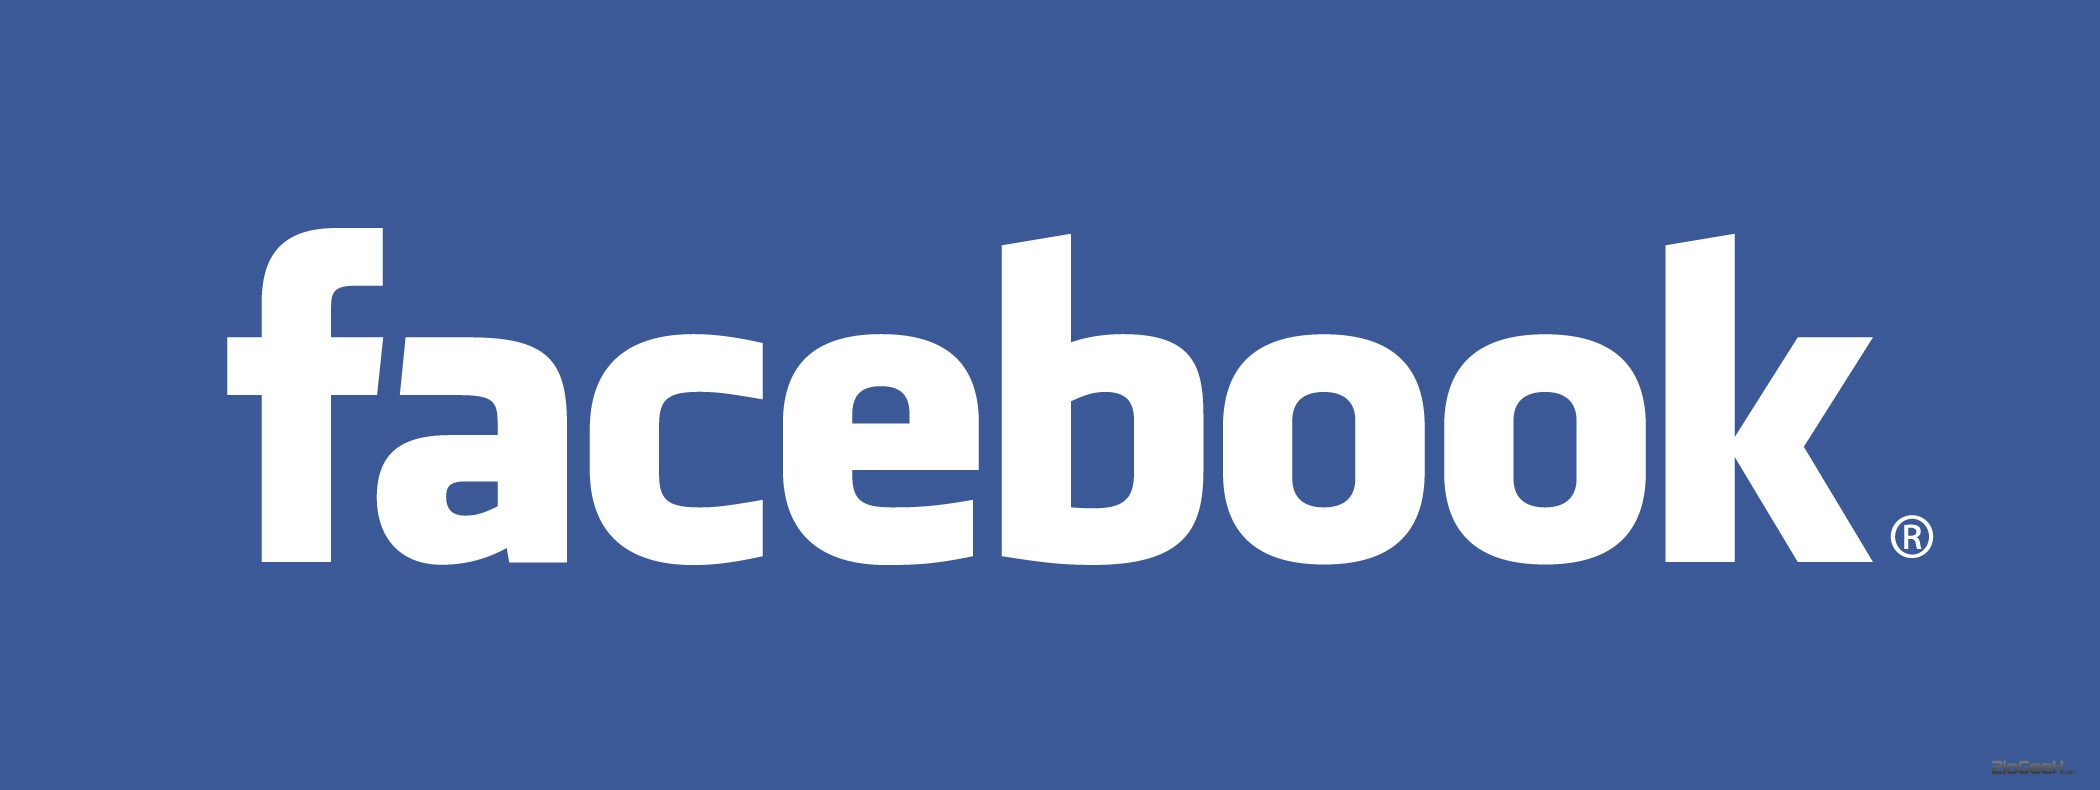 Facebook contro la violenza, monitorate tutte le conversazioni e le e-mail